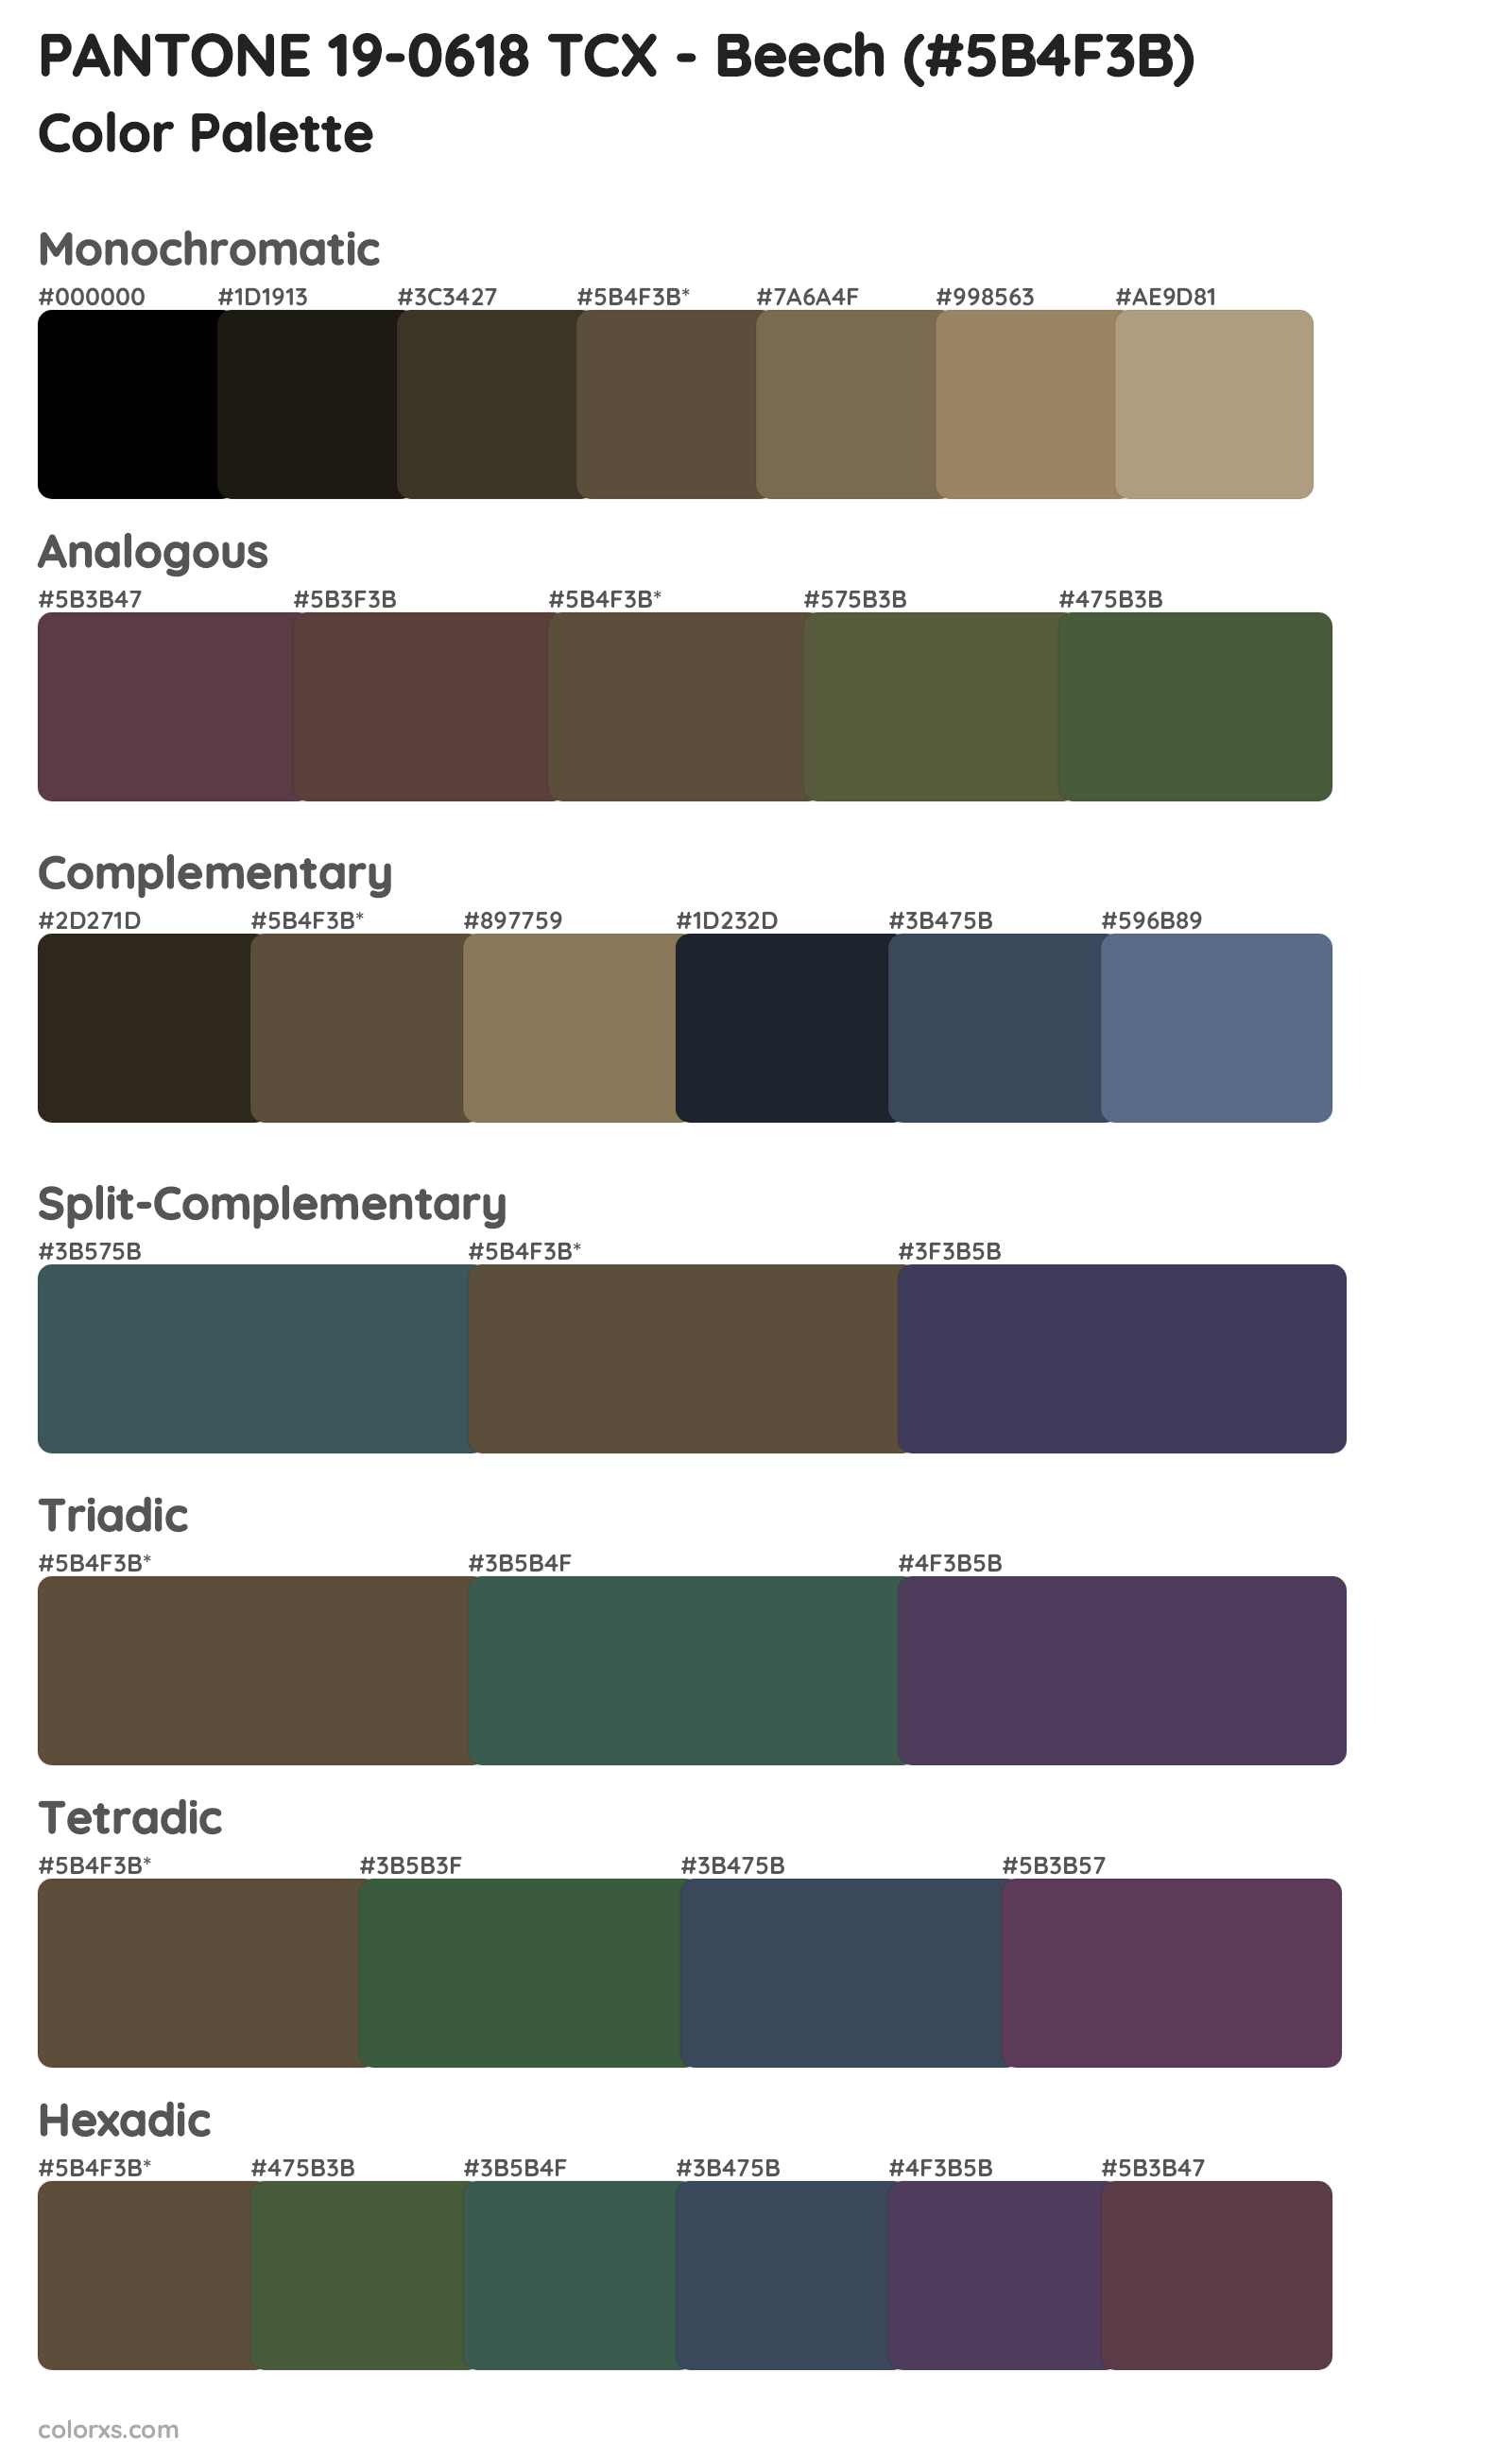 PANTONE 19-0618 TCX - Beech Color Scheme Palettes